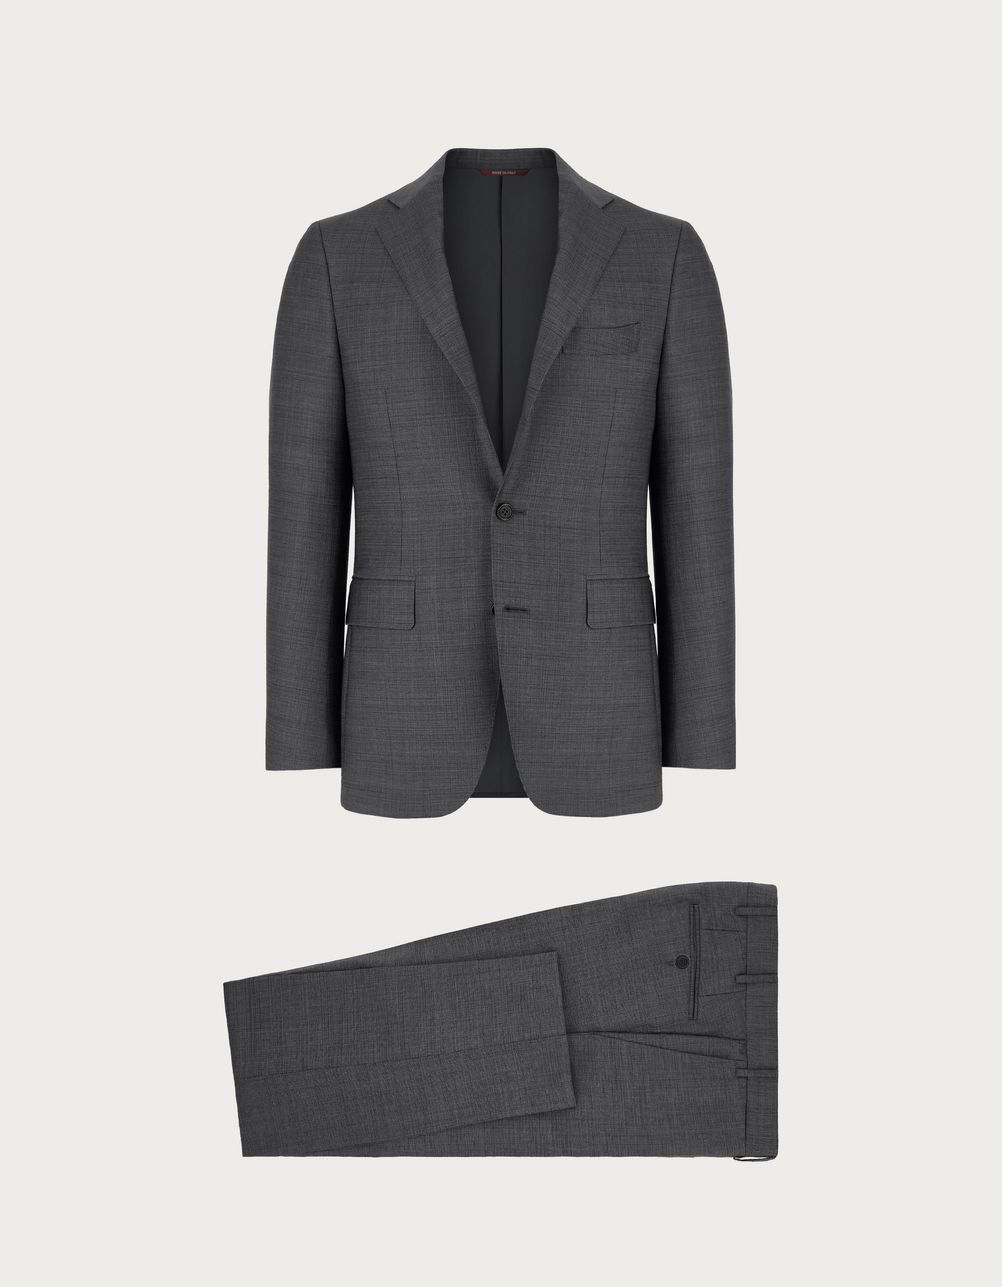 Suit in grey wool